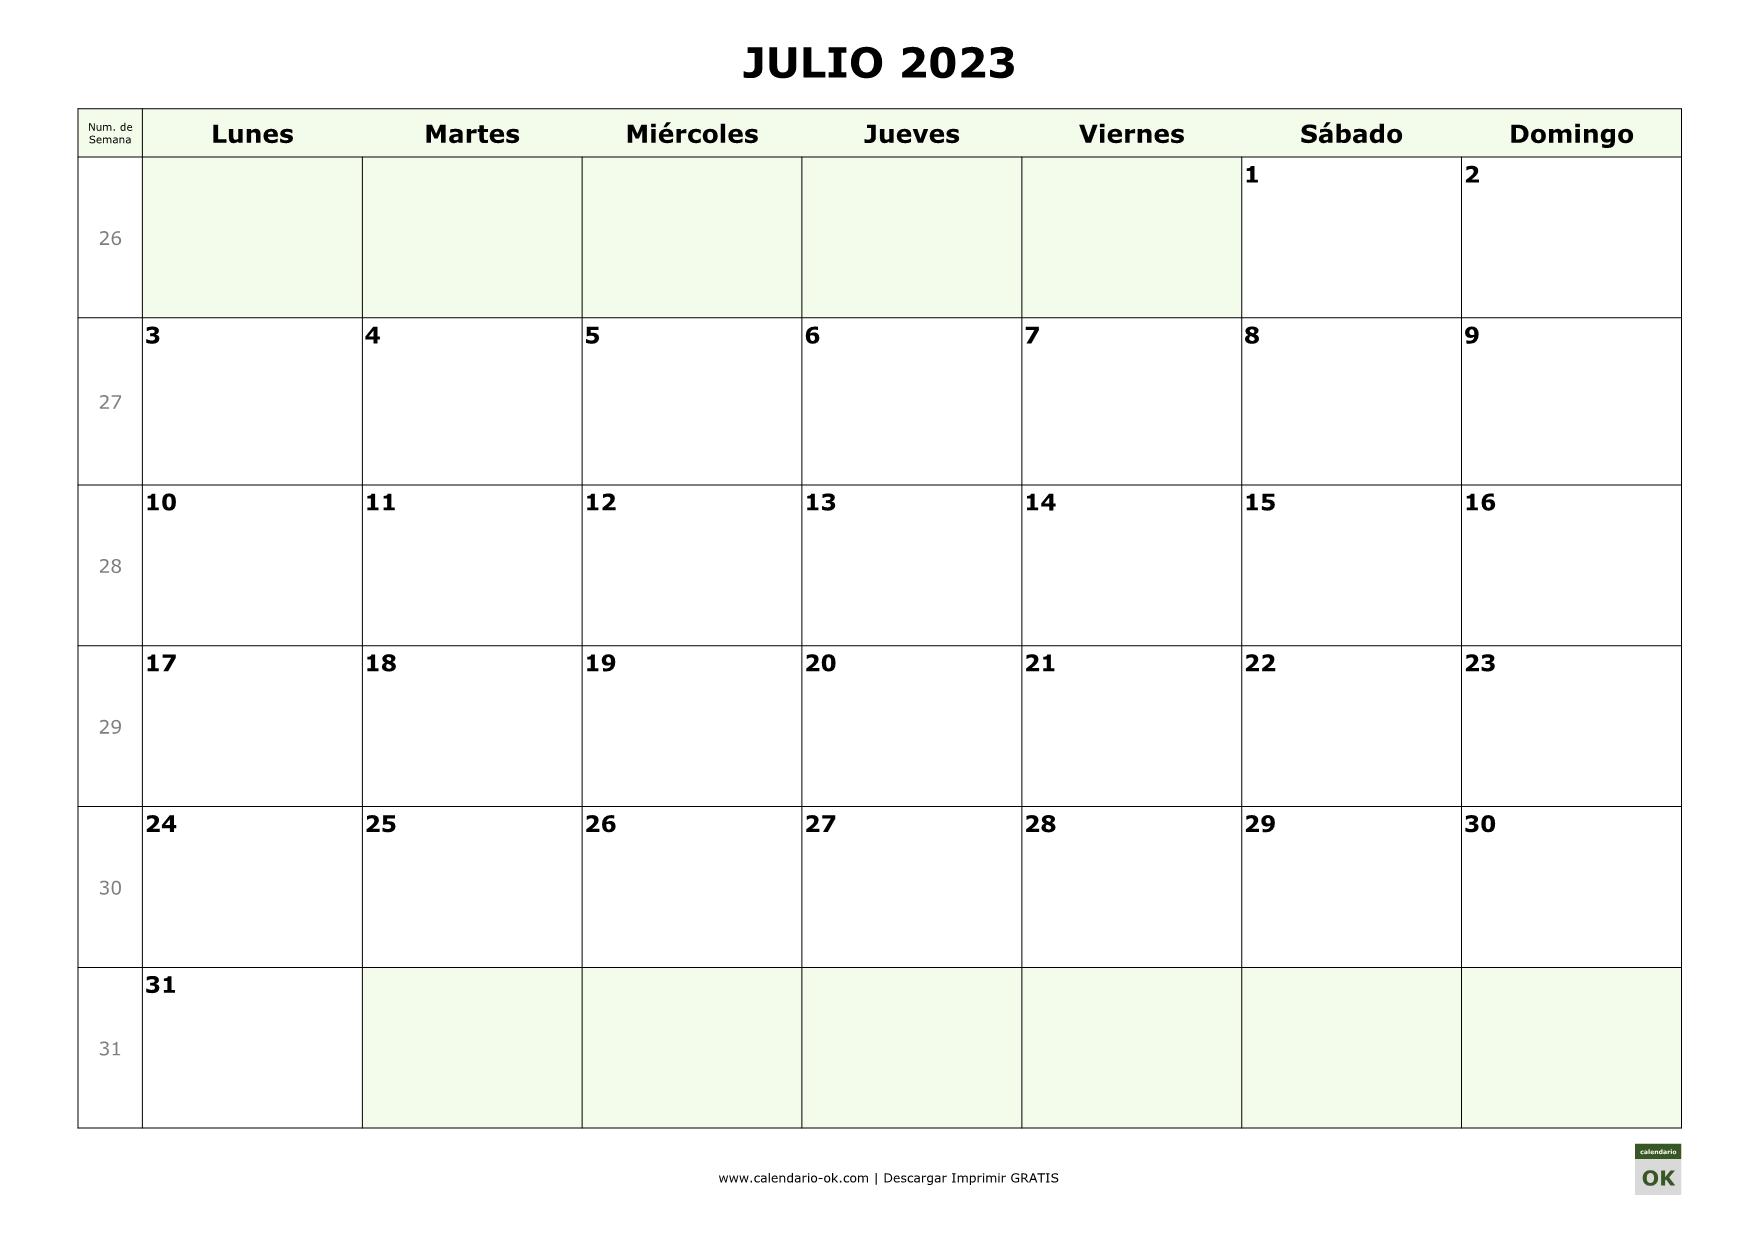 JULIO 2023 con Numero de Semana